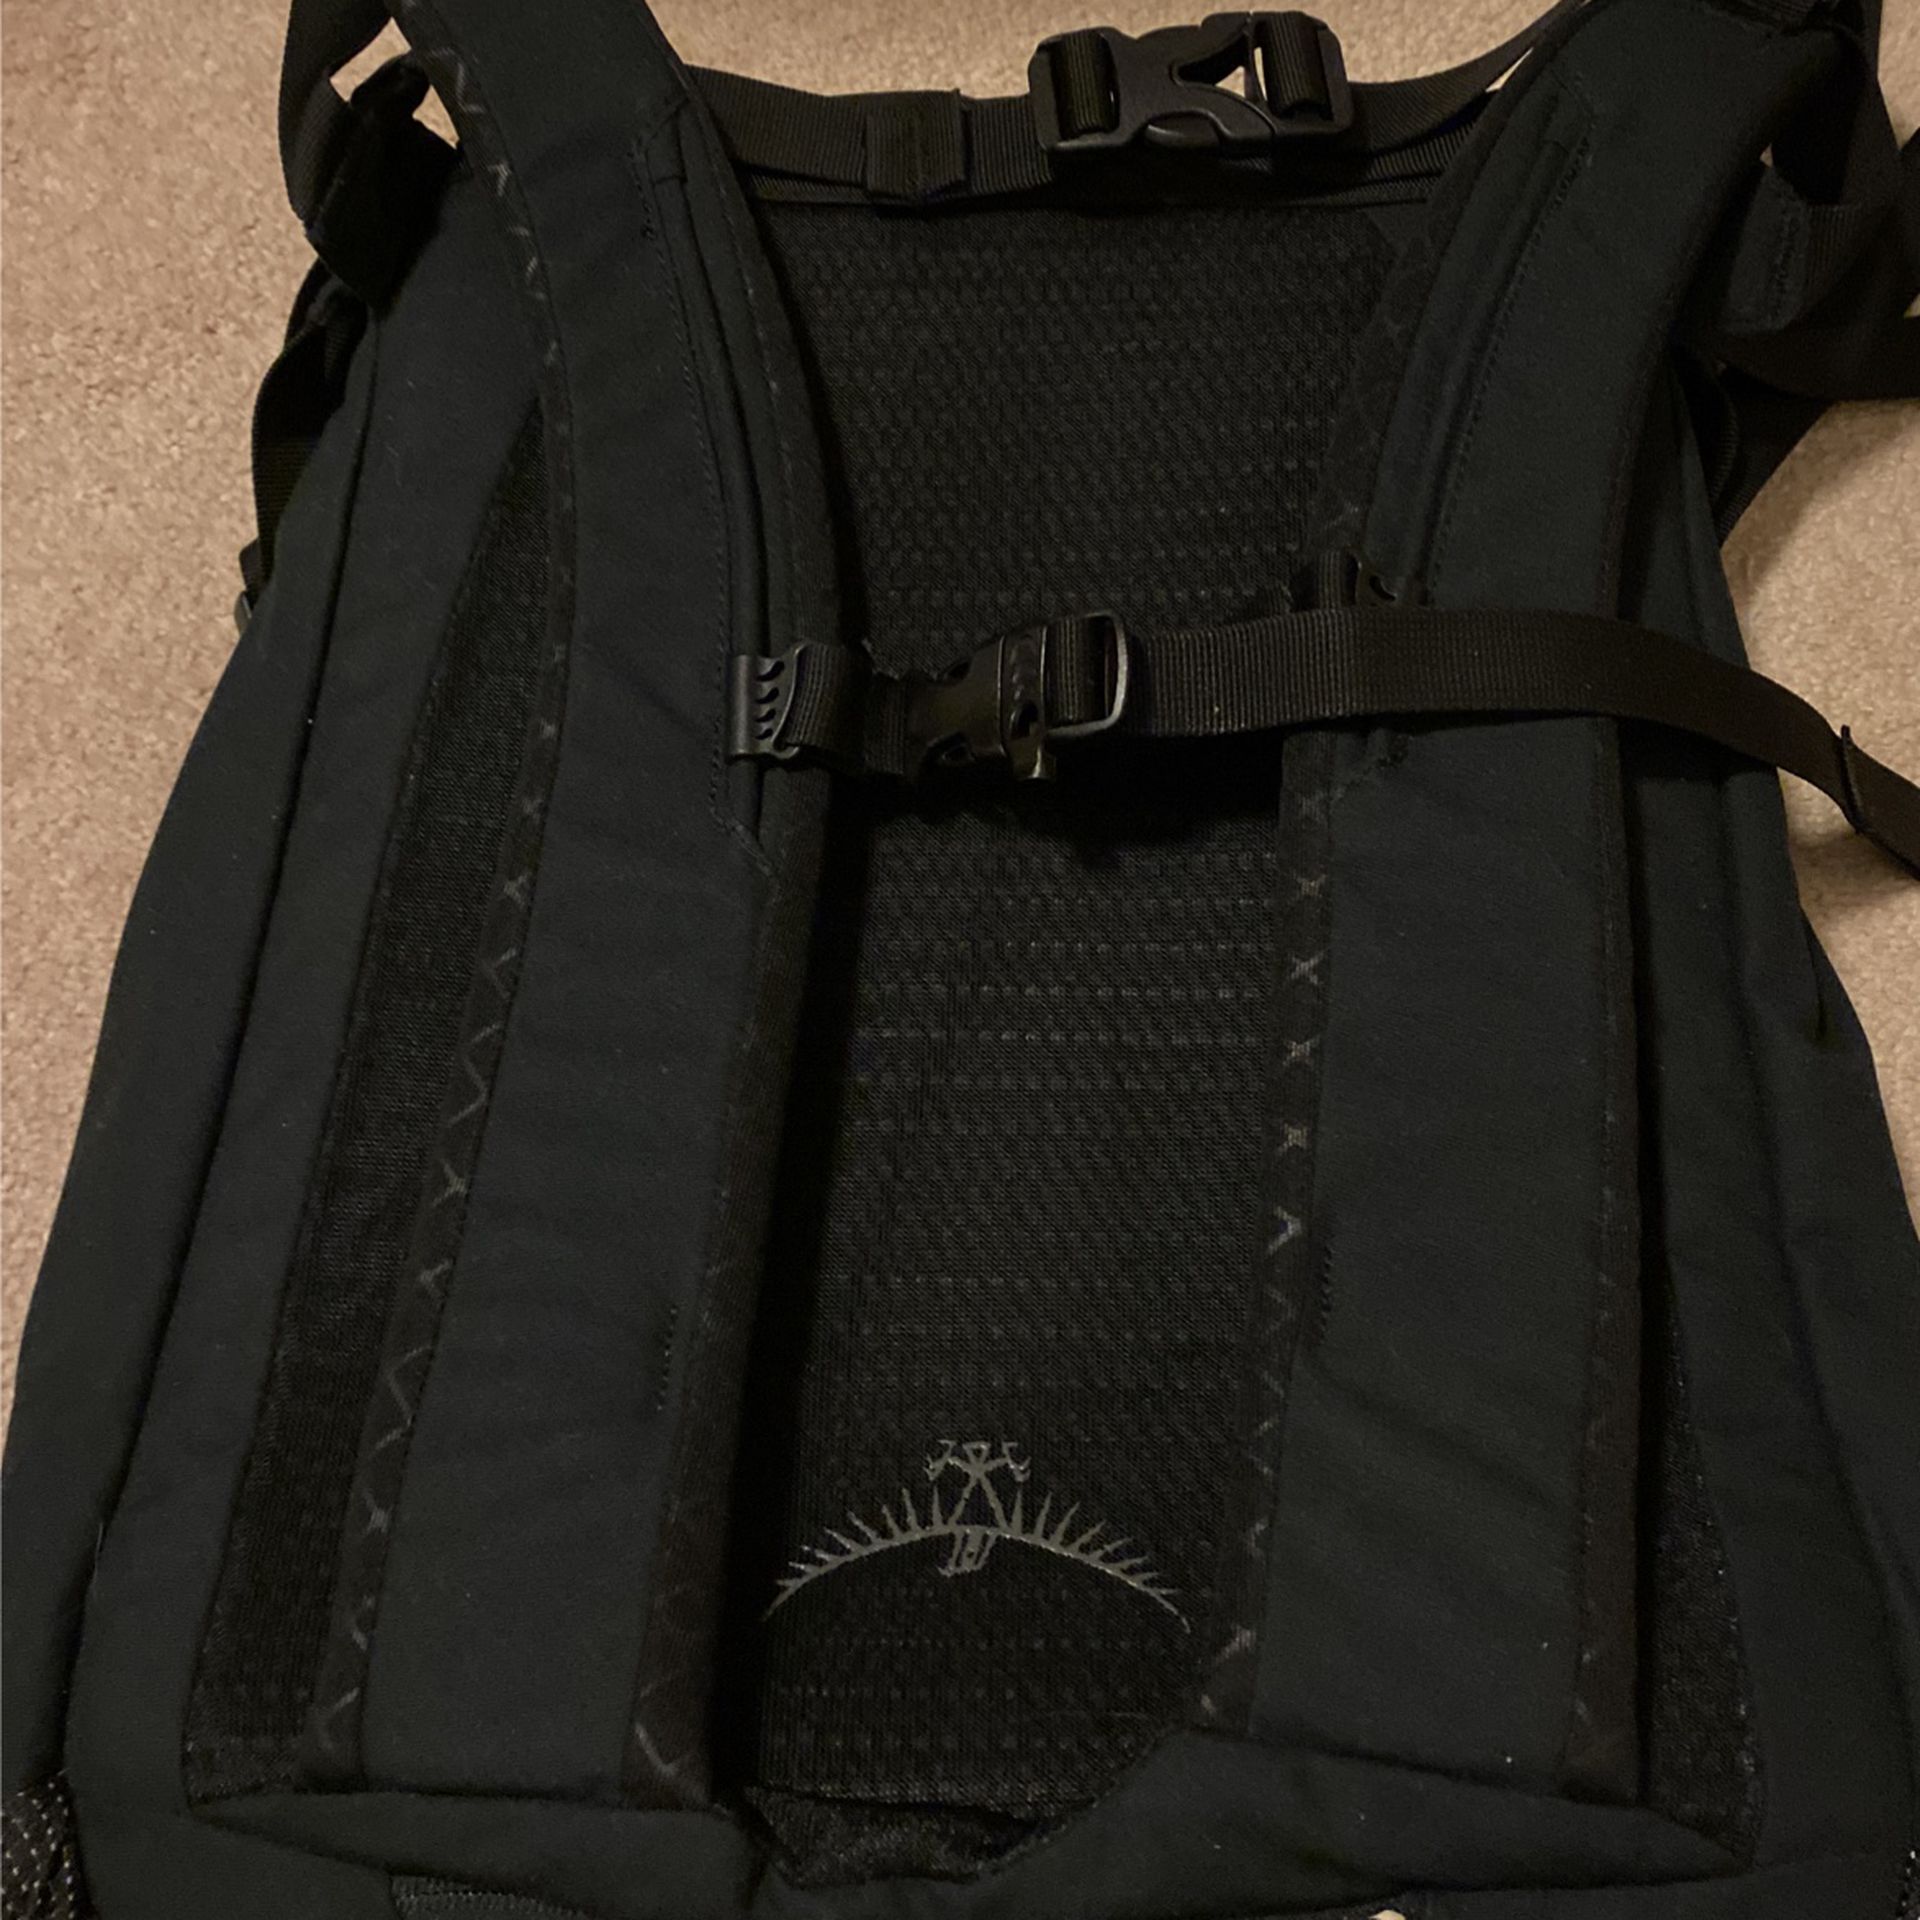 Osprey Pixel Backpack